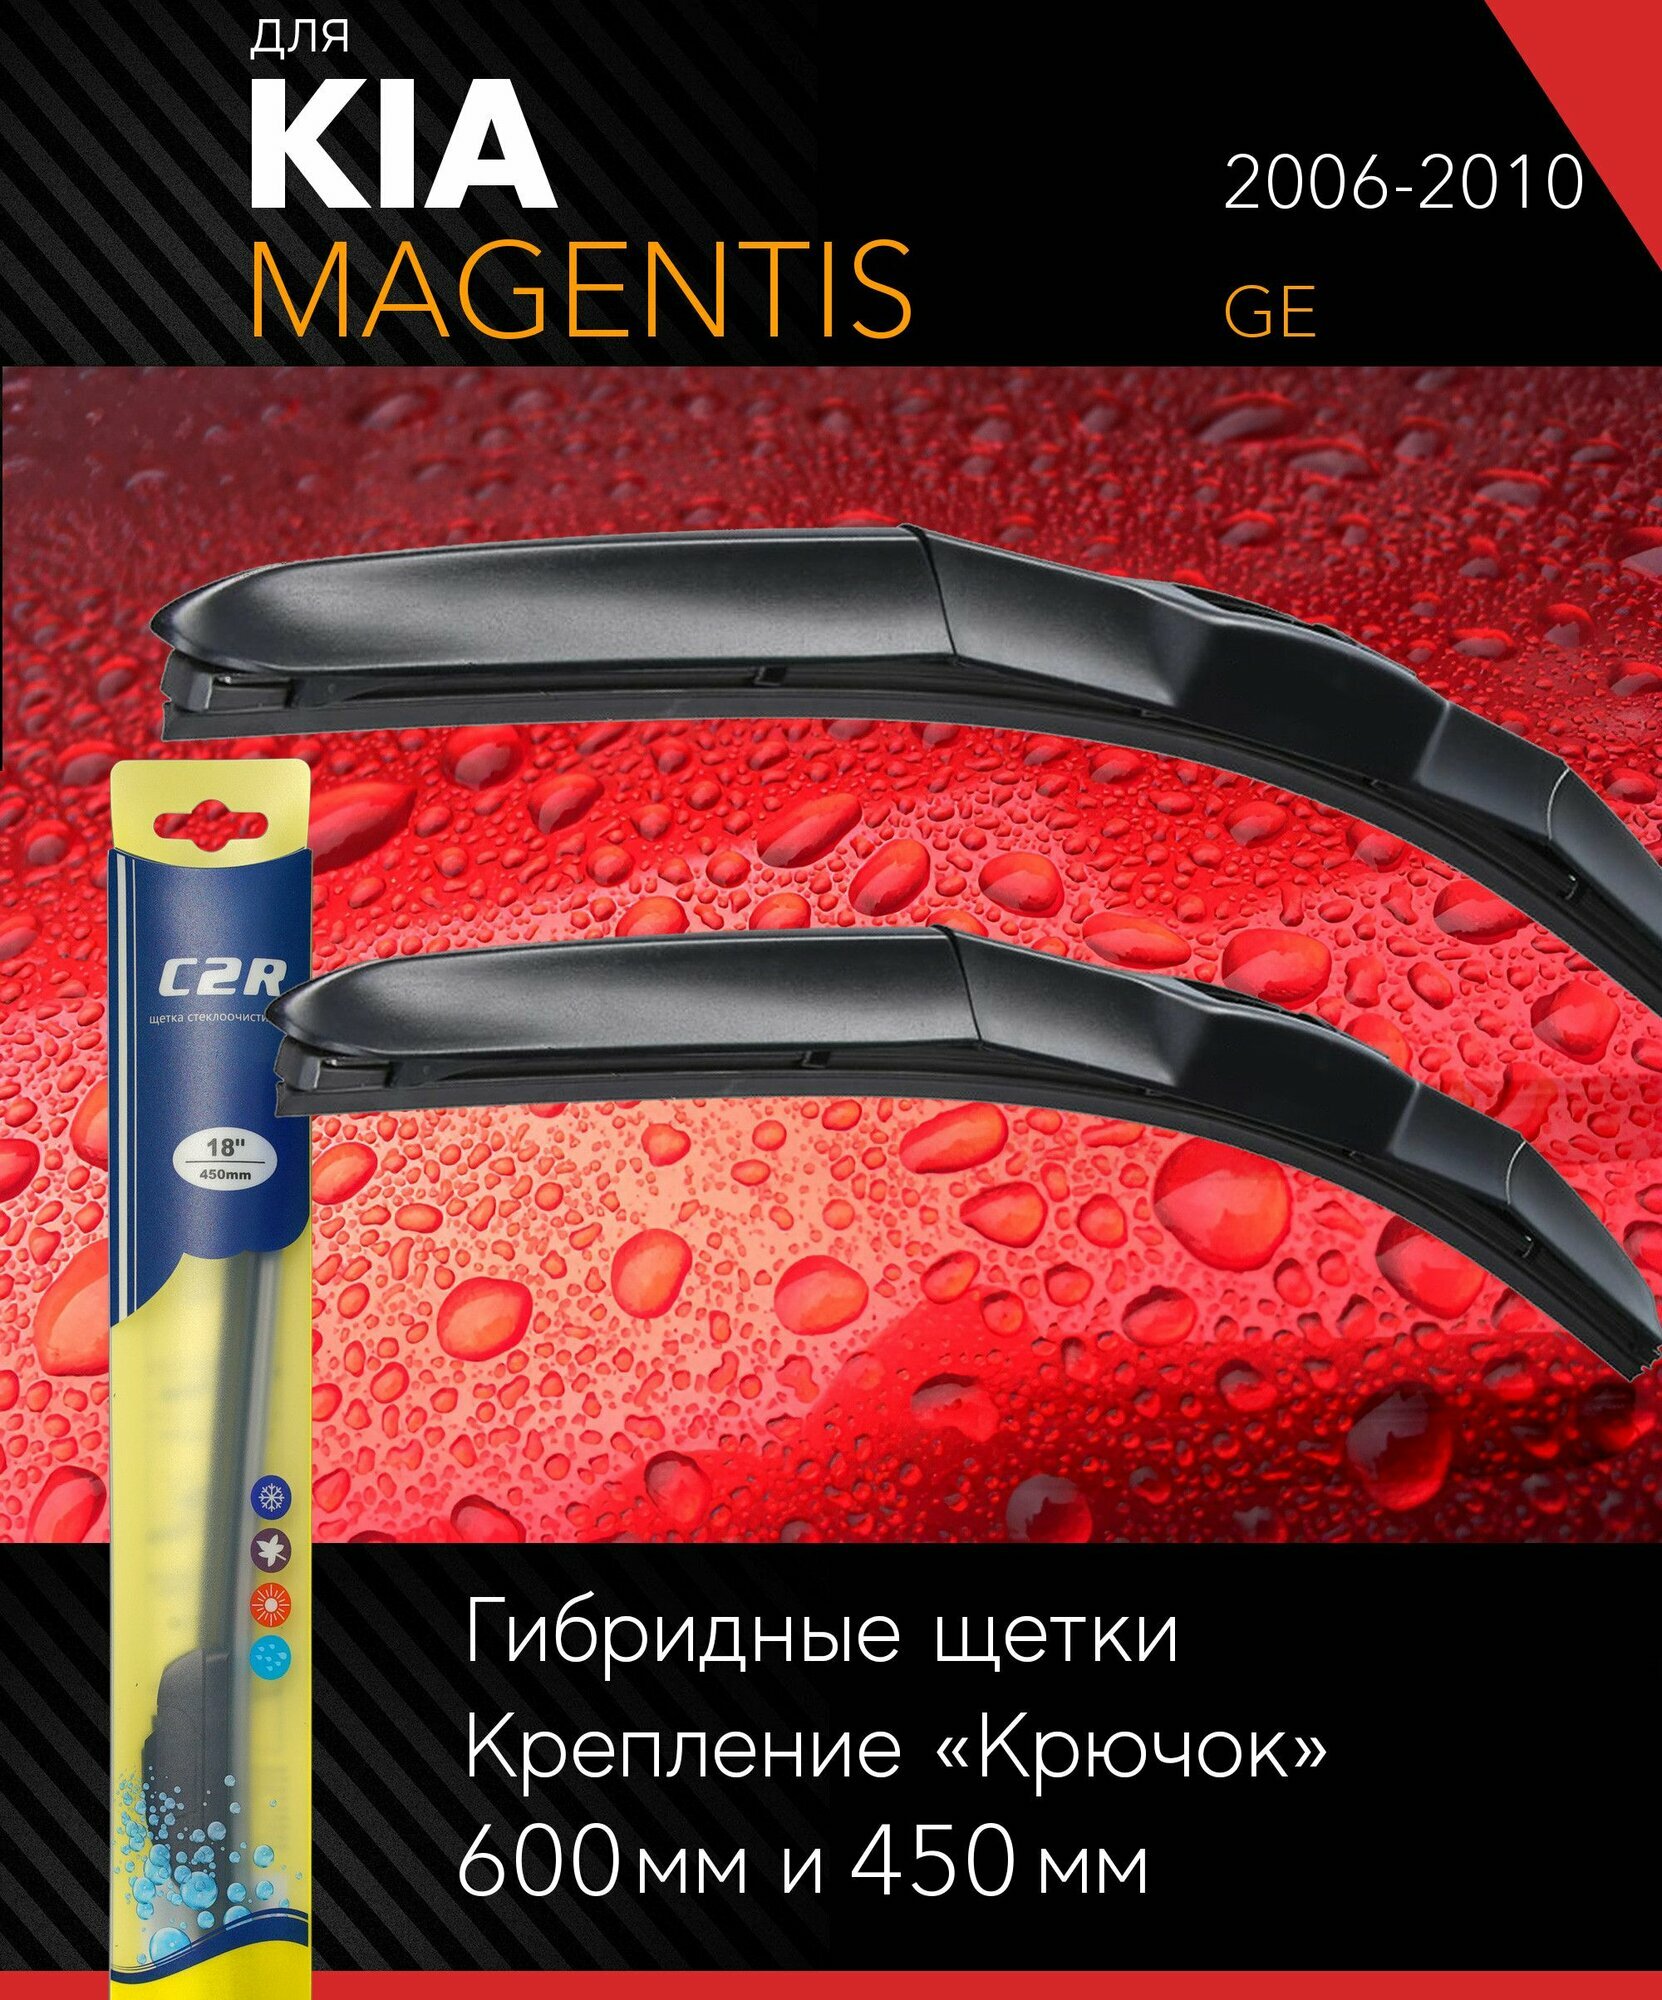 2 щетки стеклоочистителя 600 450 мм на Киа Маджентис 2006-2010 гибридные дворники комплект для Kia Magentis (GE) - C2R